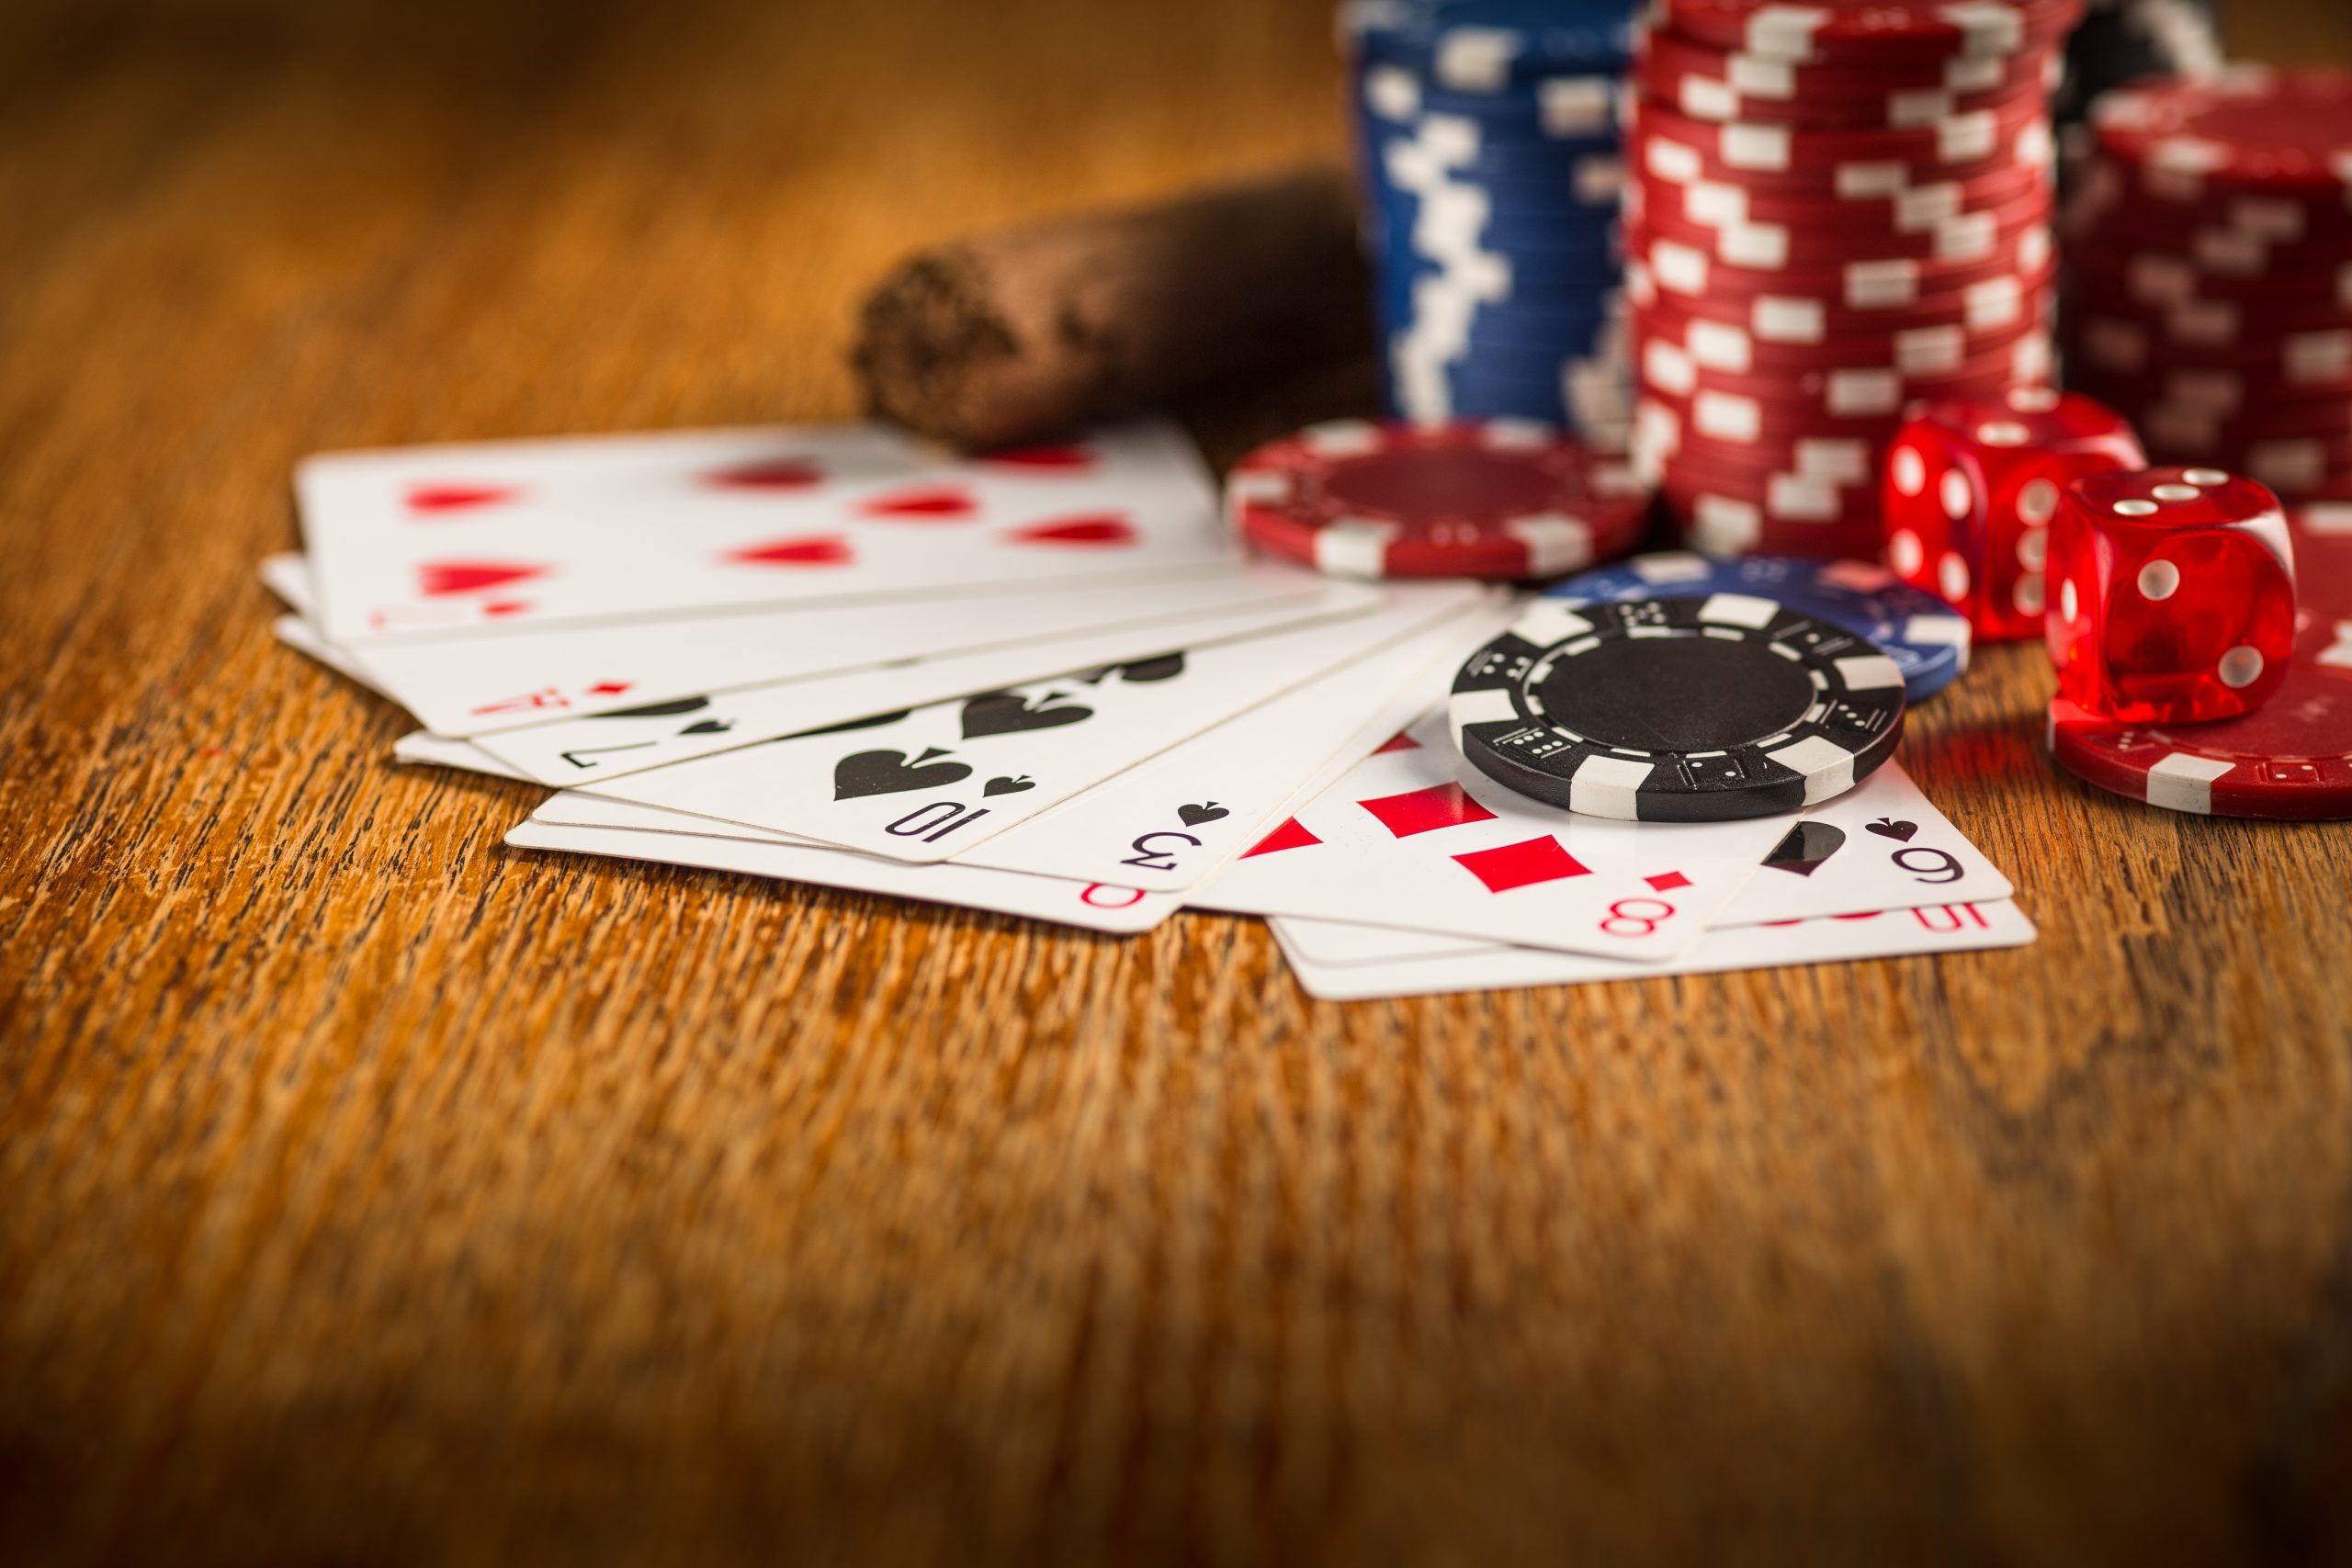 How do I play Texas Hold’em poker?